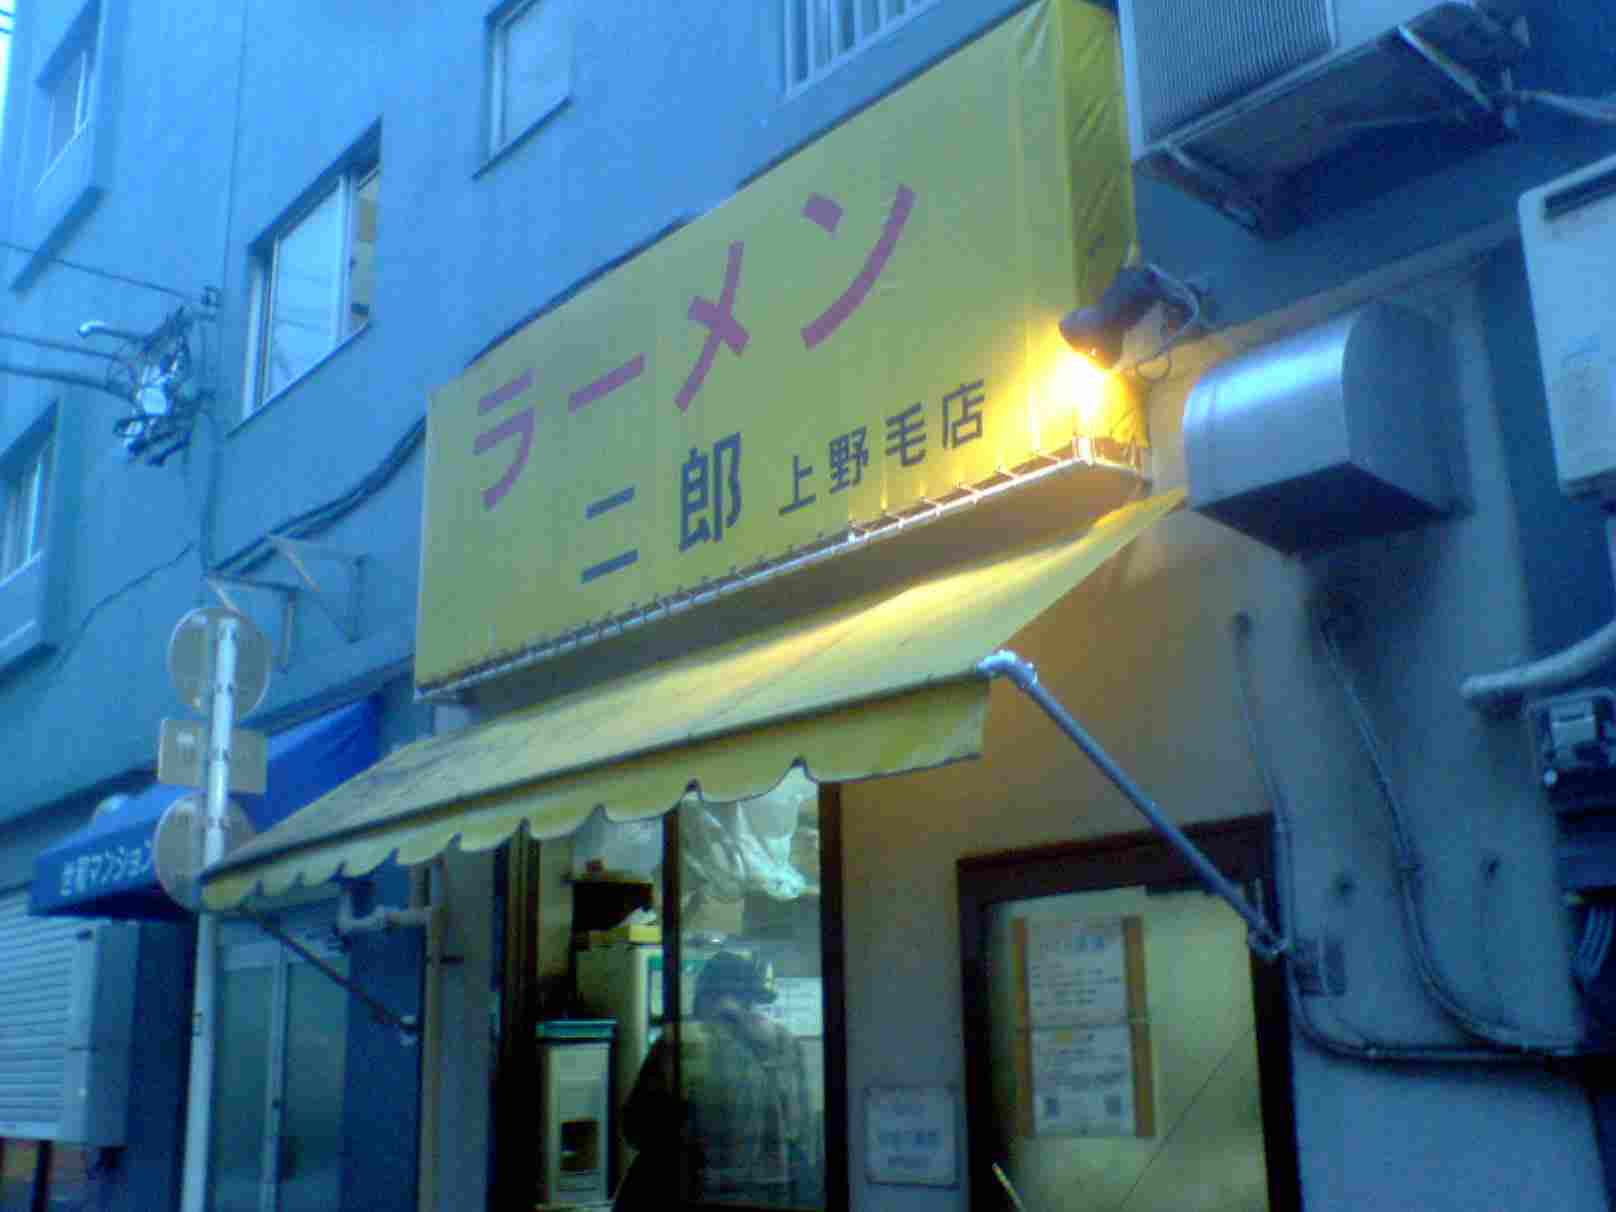 ラーメン二郎 上野毛店